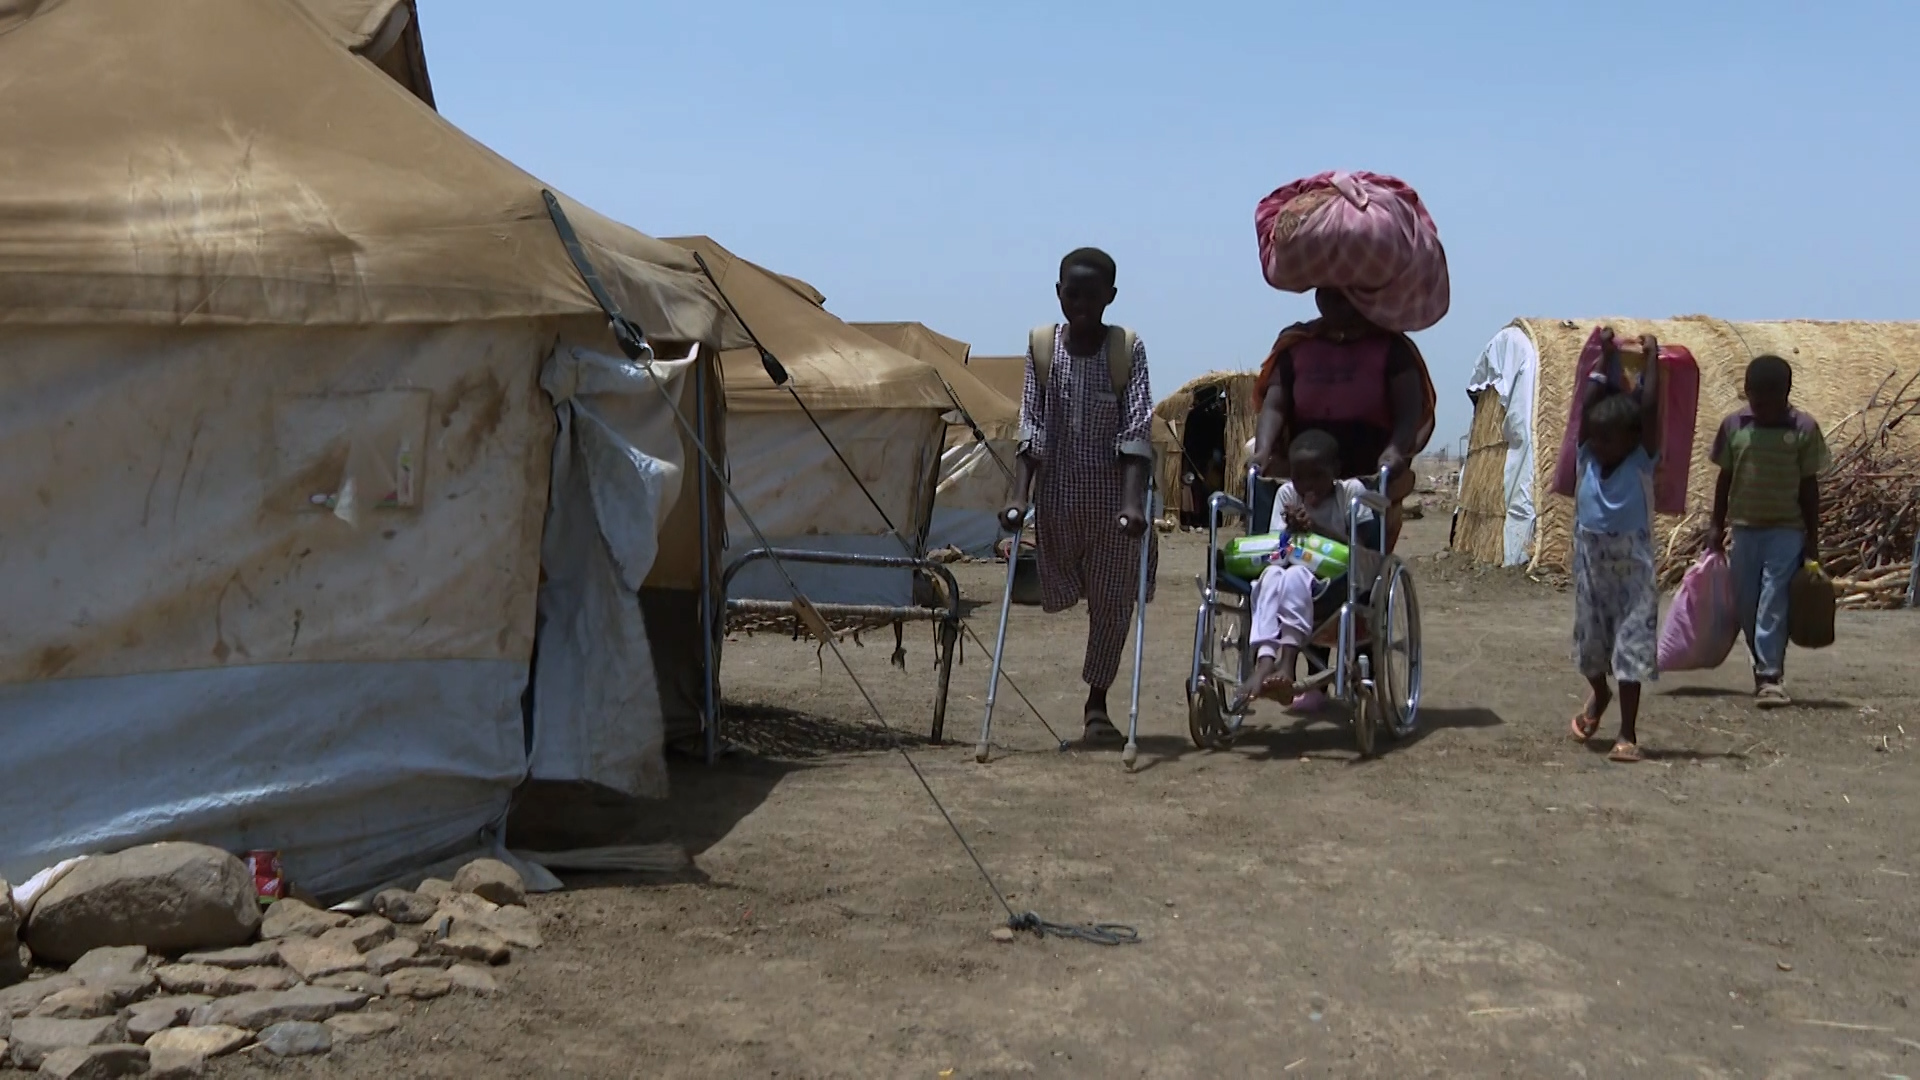 أزمة حادة في الغذاء والدواء يعيشها النازحون بالقضارف السودانية | البرامج – البوكس نيوز